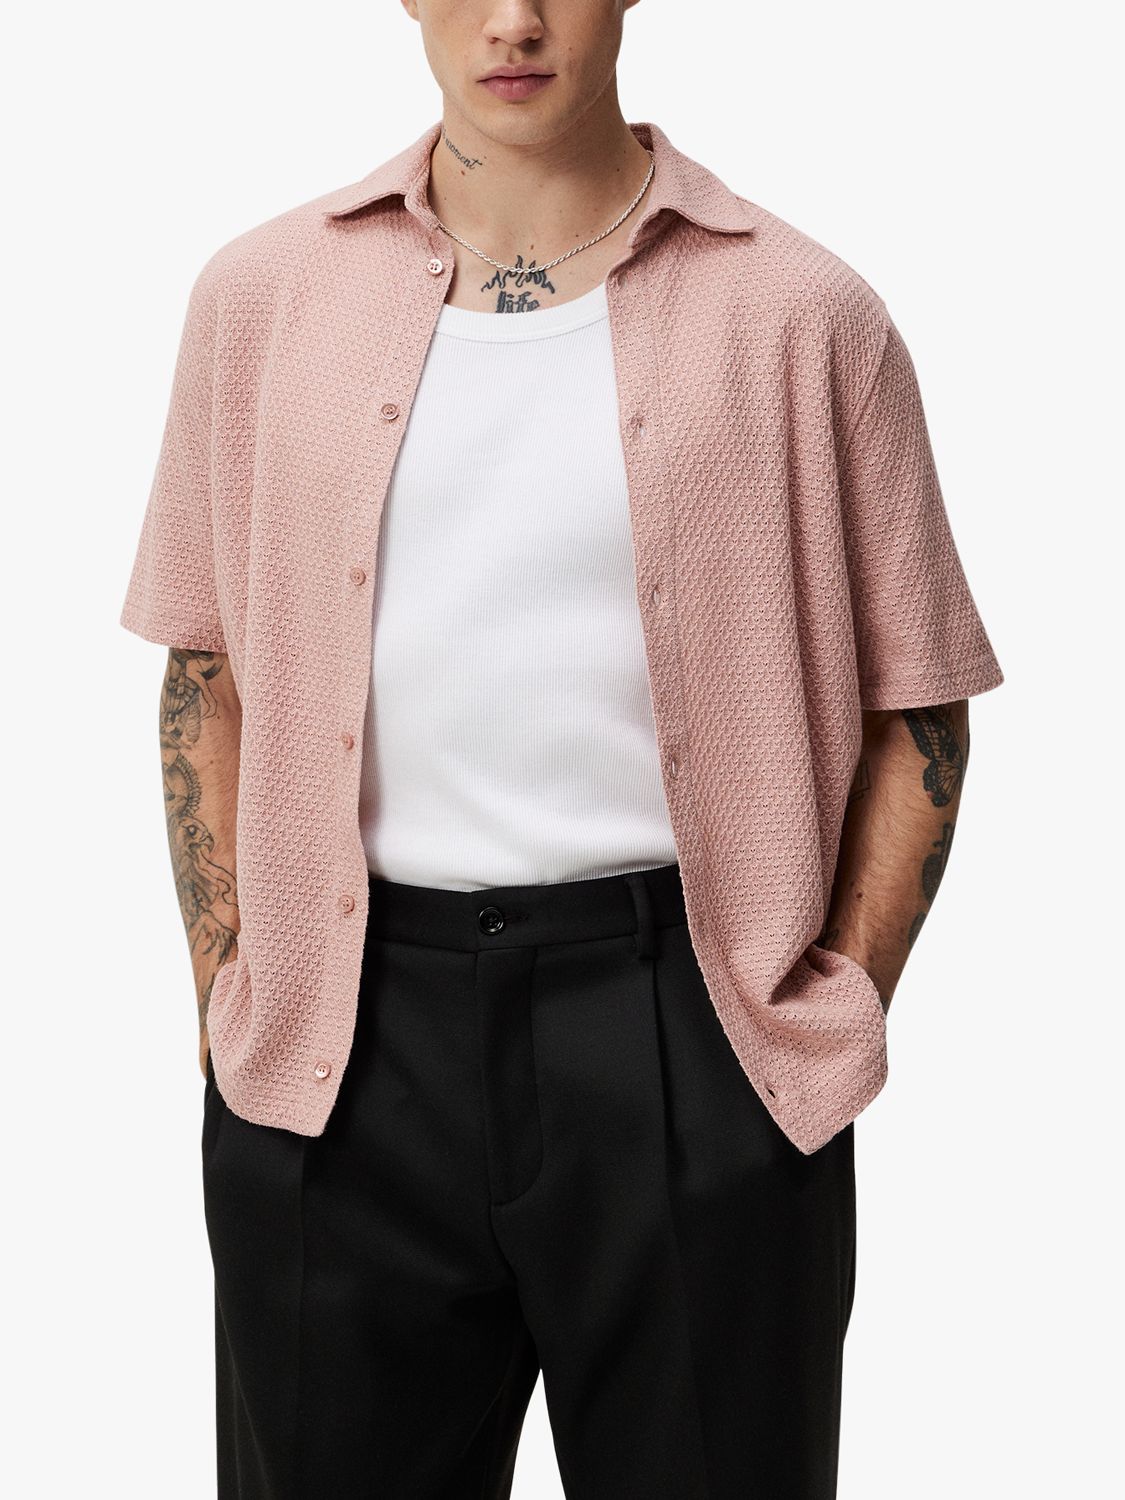 J.Lindeberg Torpa Airy Short Sleeve Shirt, Powder Pink, S